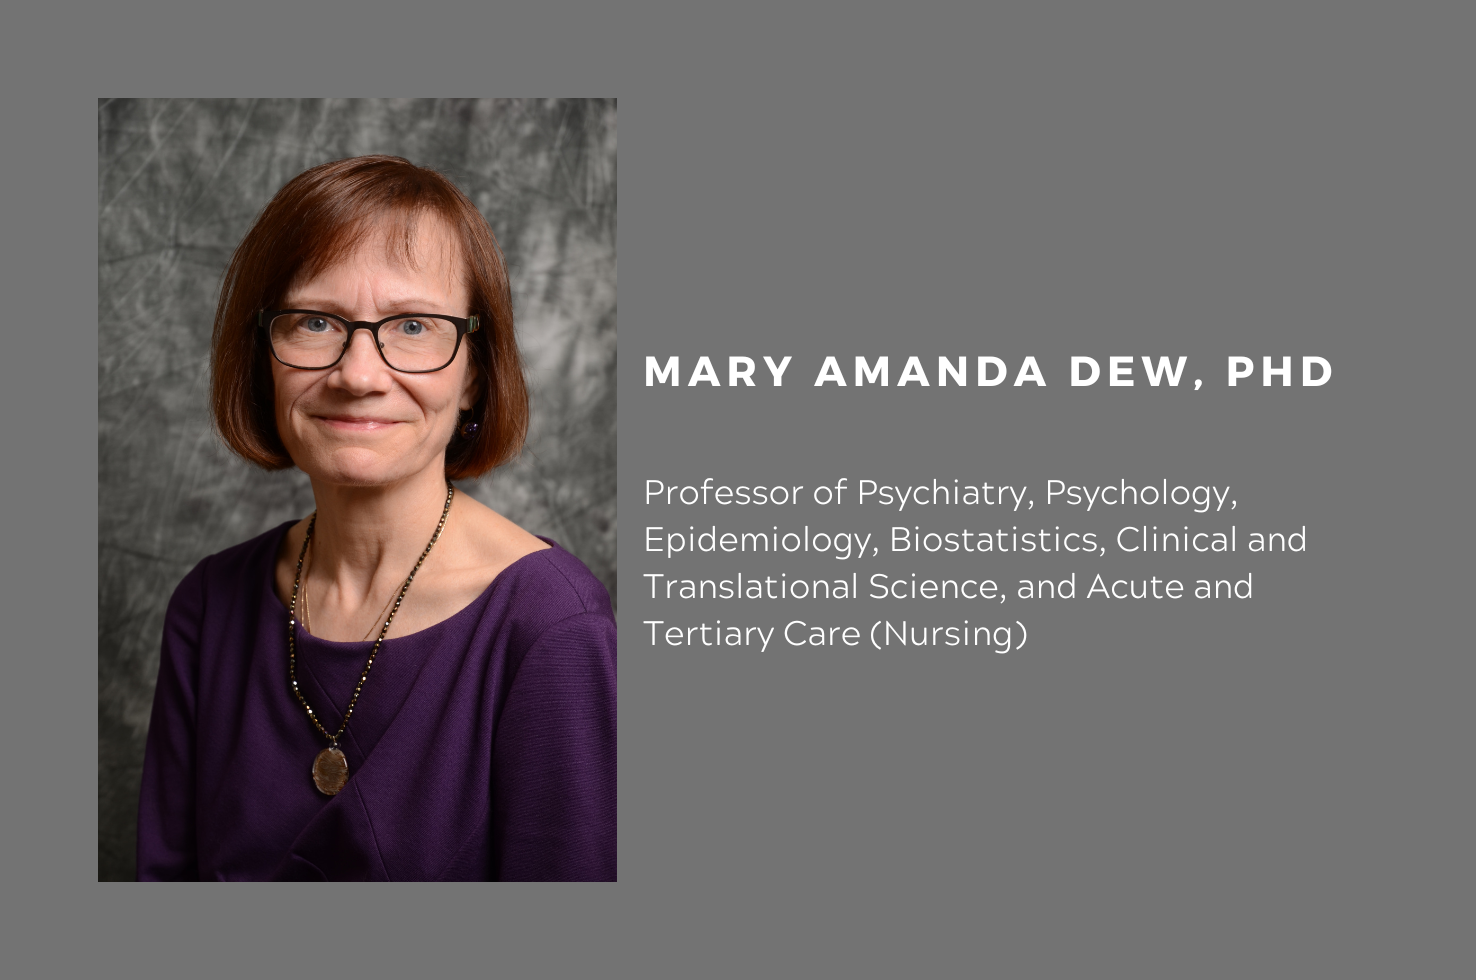 Dr. Mary Amanda Dew